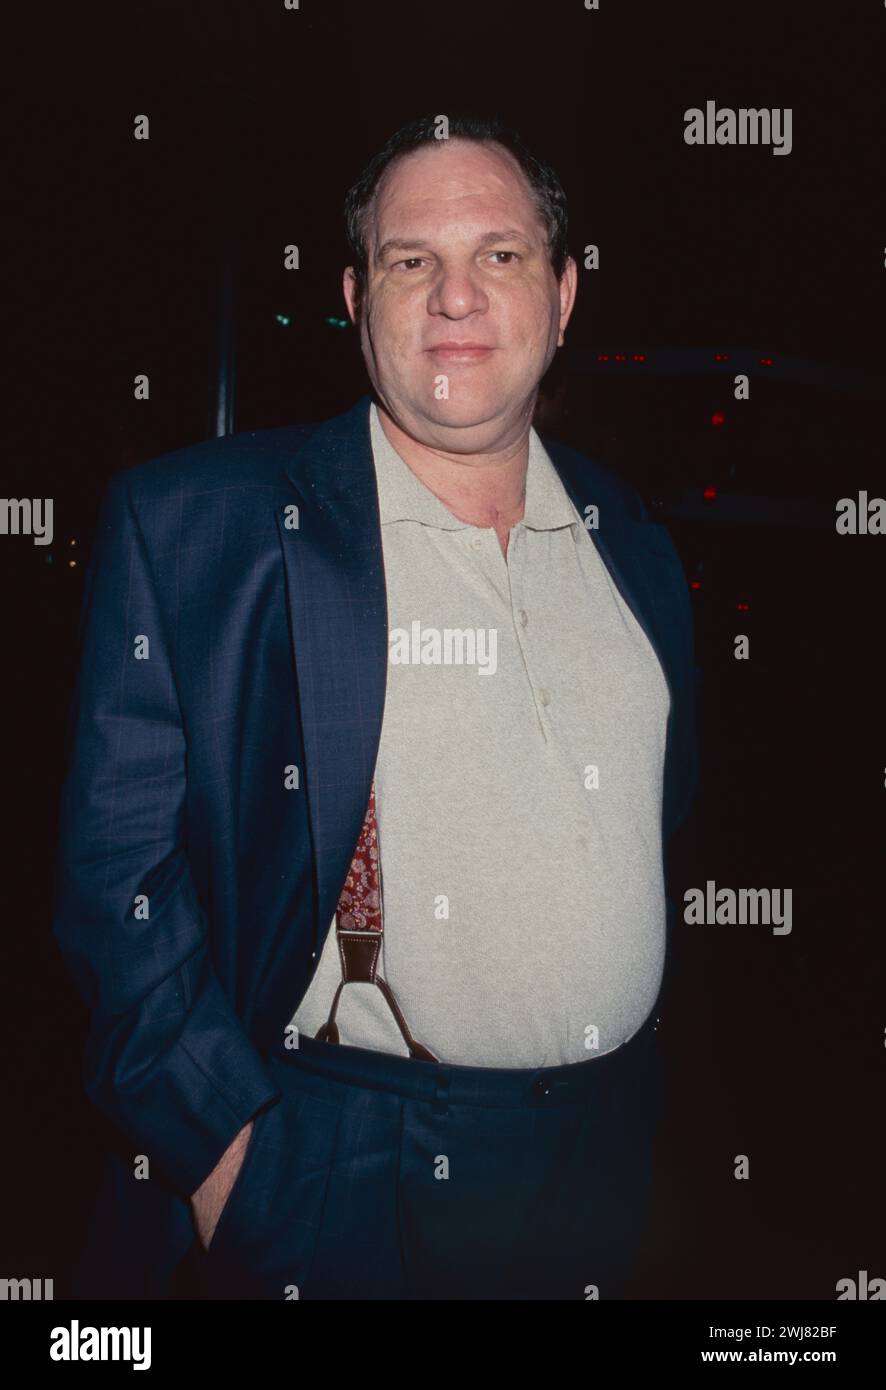 Harvey Weinstein partecipa alla prima di "Where the Money Is" alla Loews 42nd Street e-Walk di New York City il 4 aprile 2000. Foto di Henry McGee/MediaPunch Foto Stock